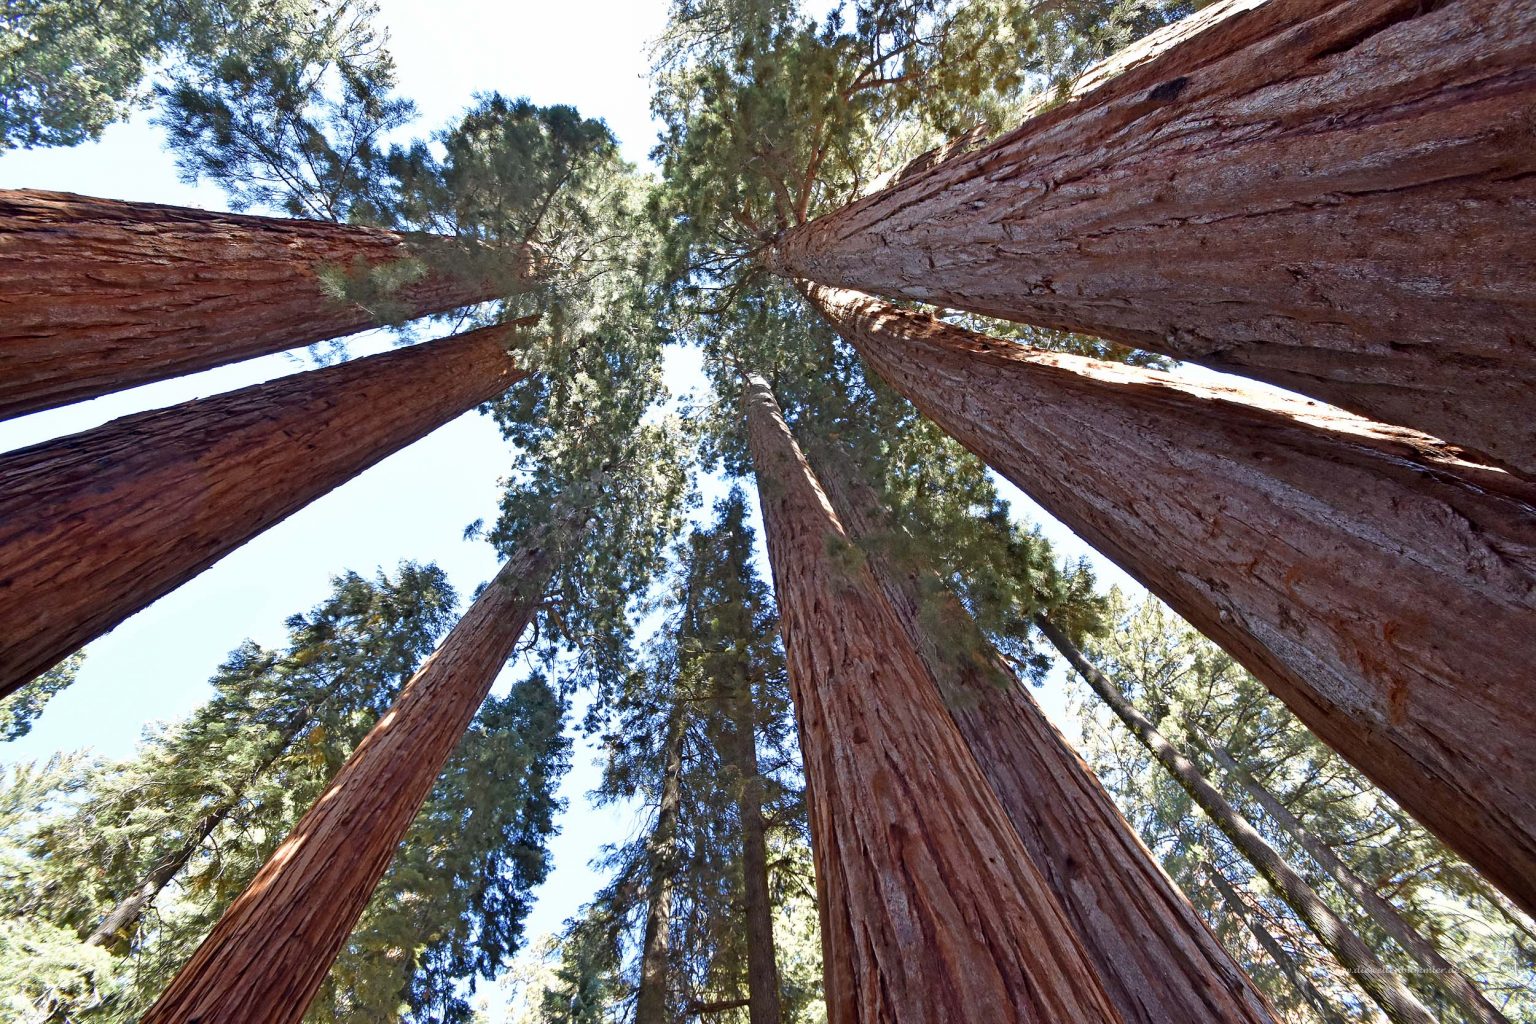 Sequoia-Bäume